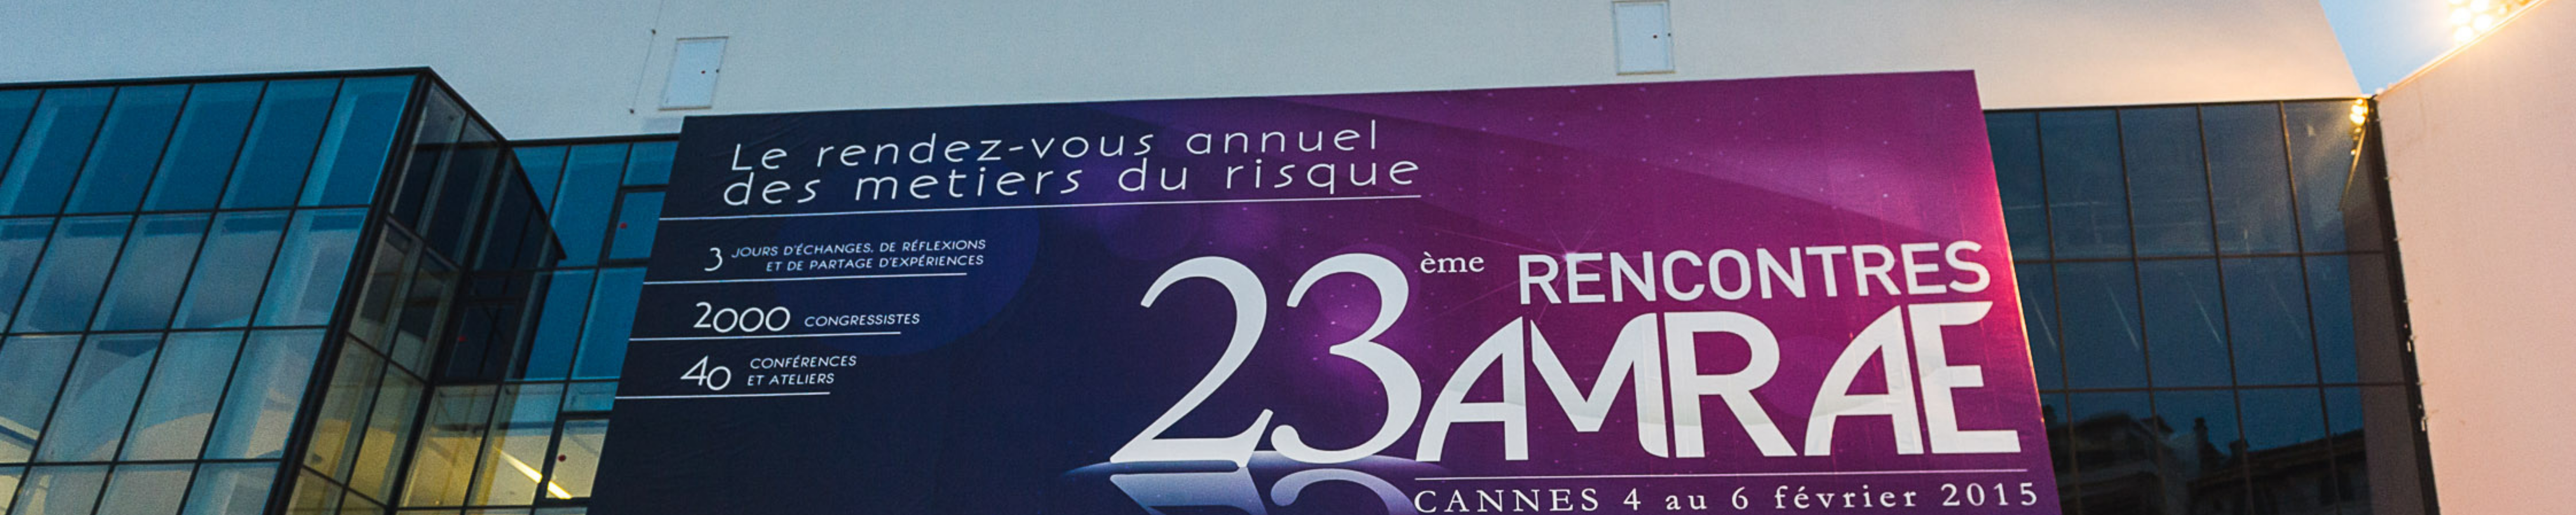 Rencontres AMRAE 2015 : Convention Nationale d’Assurances à Cannes